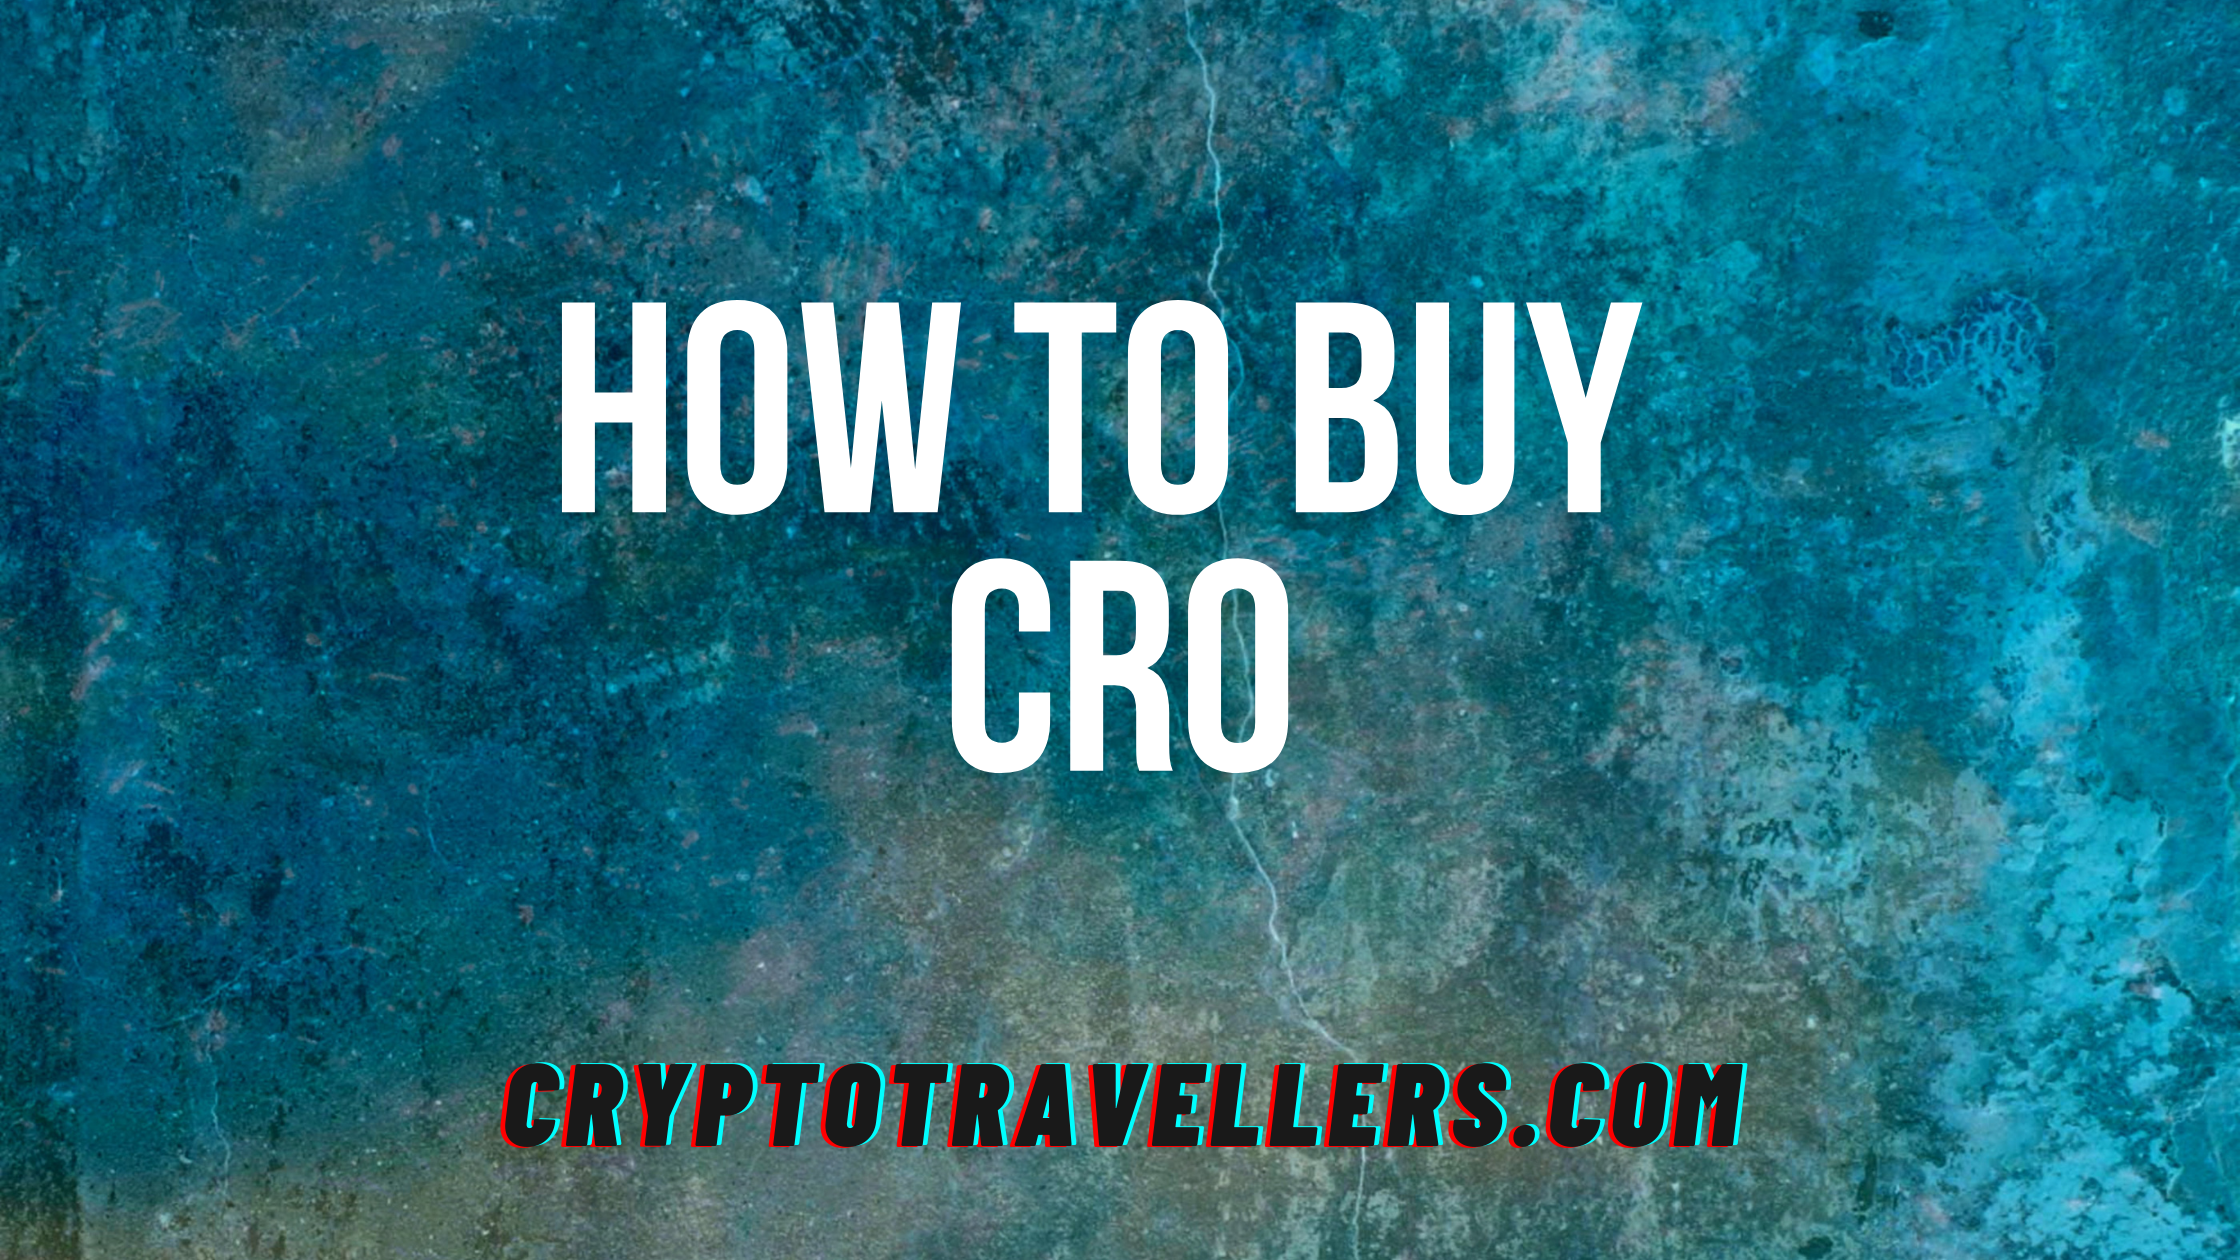 Buy CRO